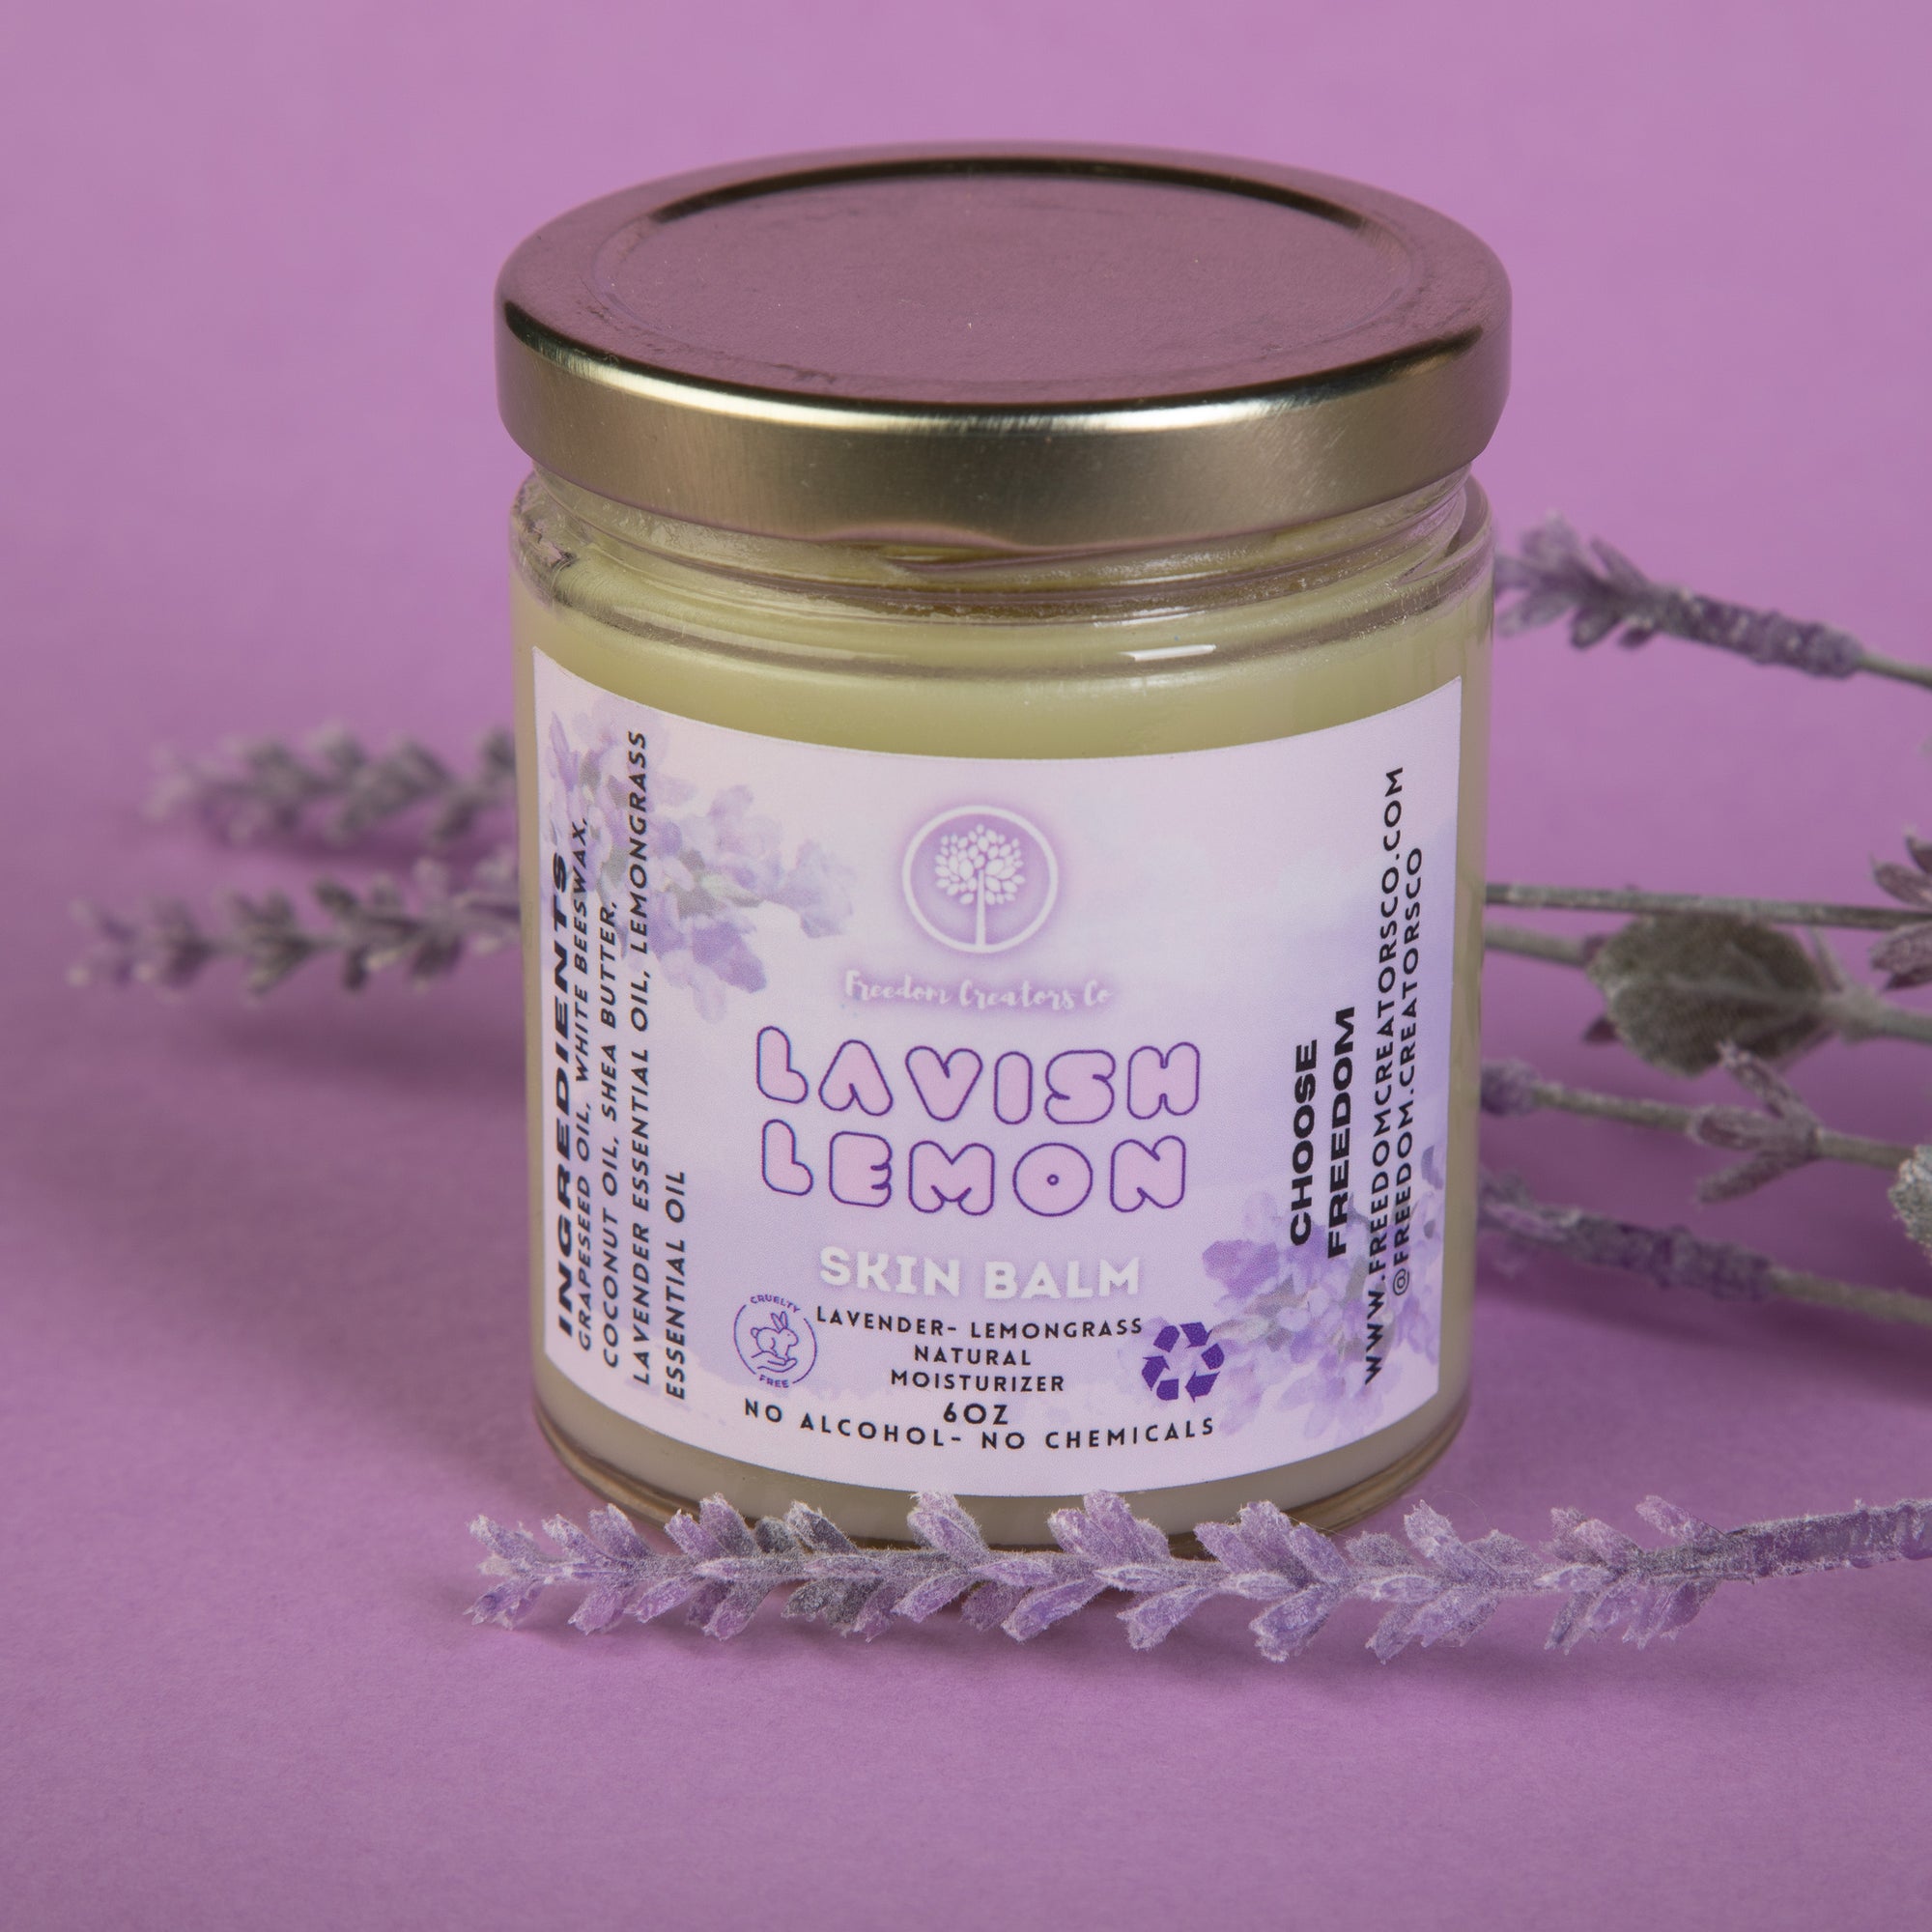 Lavender Lemongrass Skin Balm for eczema care